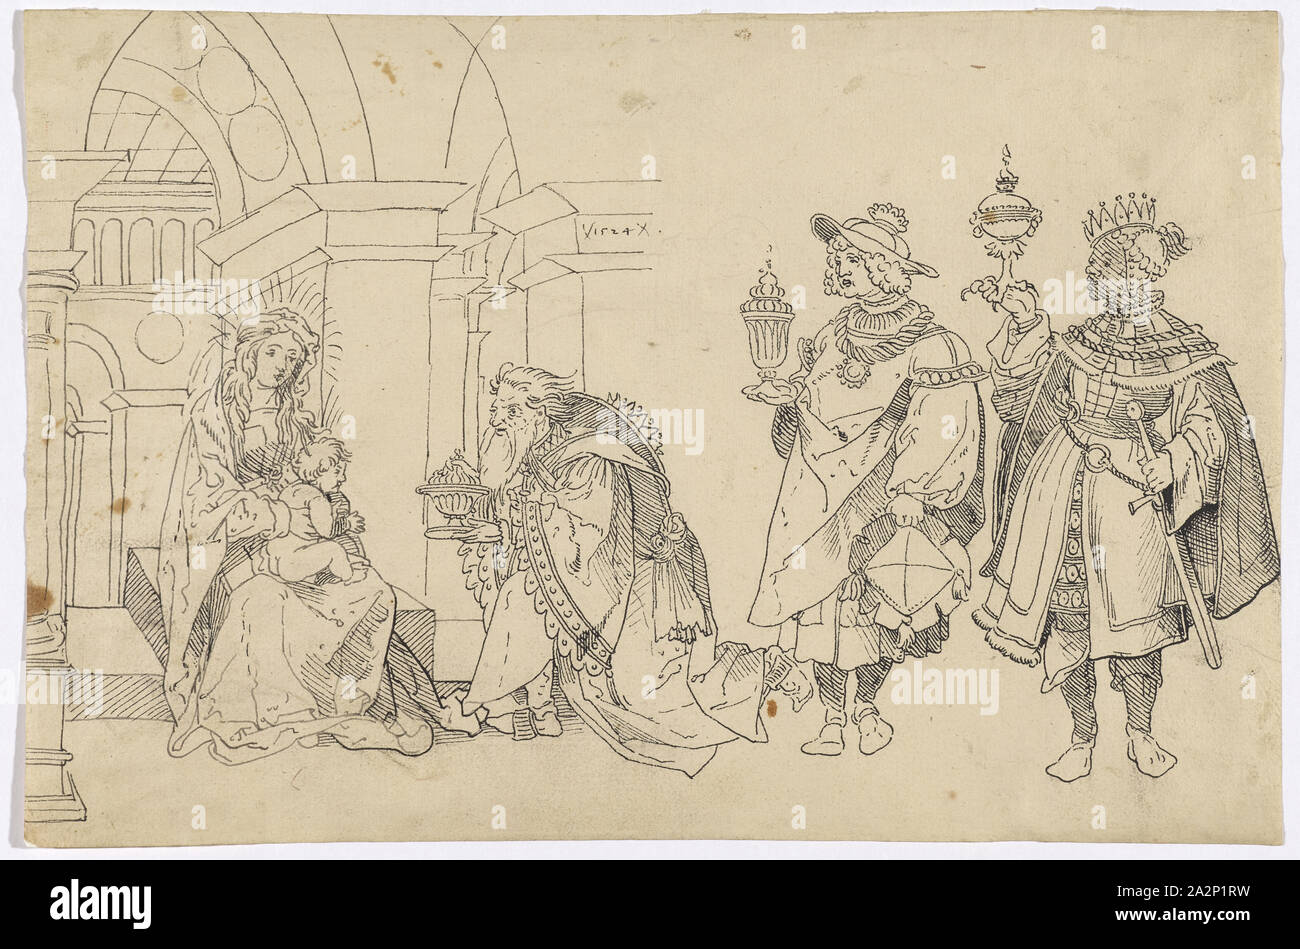 Anbetung der Heiligen Drei Könige unter einem Renaissance Arch, 1524, Feder in Dunkelgrau bis Schwarz, folia: 20,4 x 30,8 cm, in der Darstellung vom: x1524x, Anonym, Schweiz (Basel?), 1524 Stockfoto